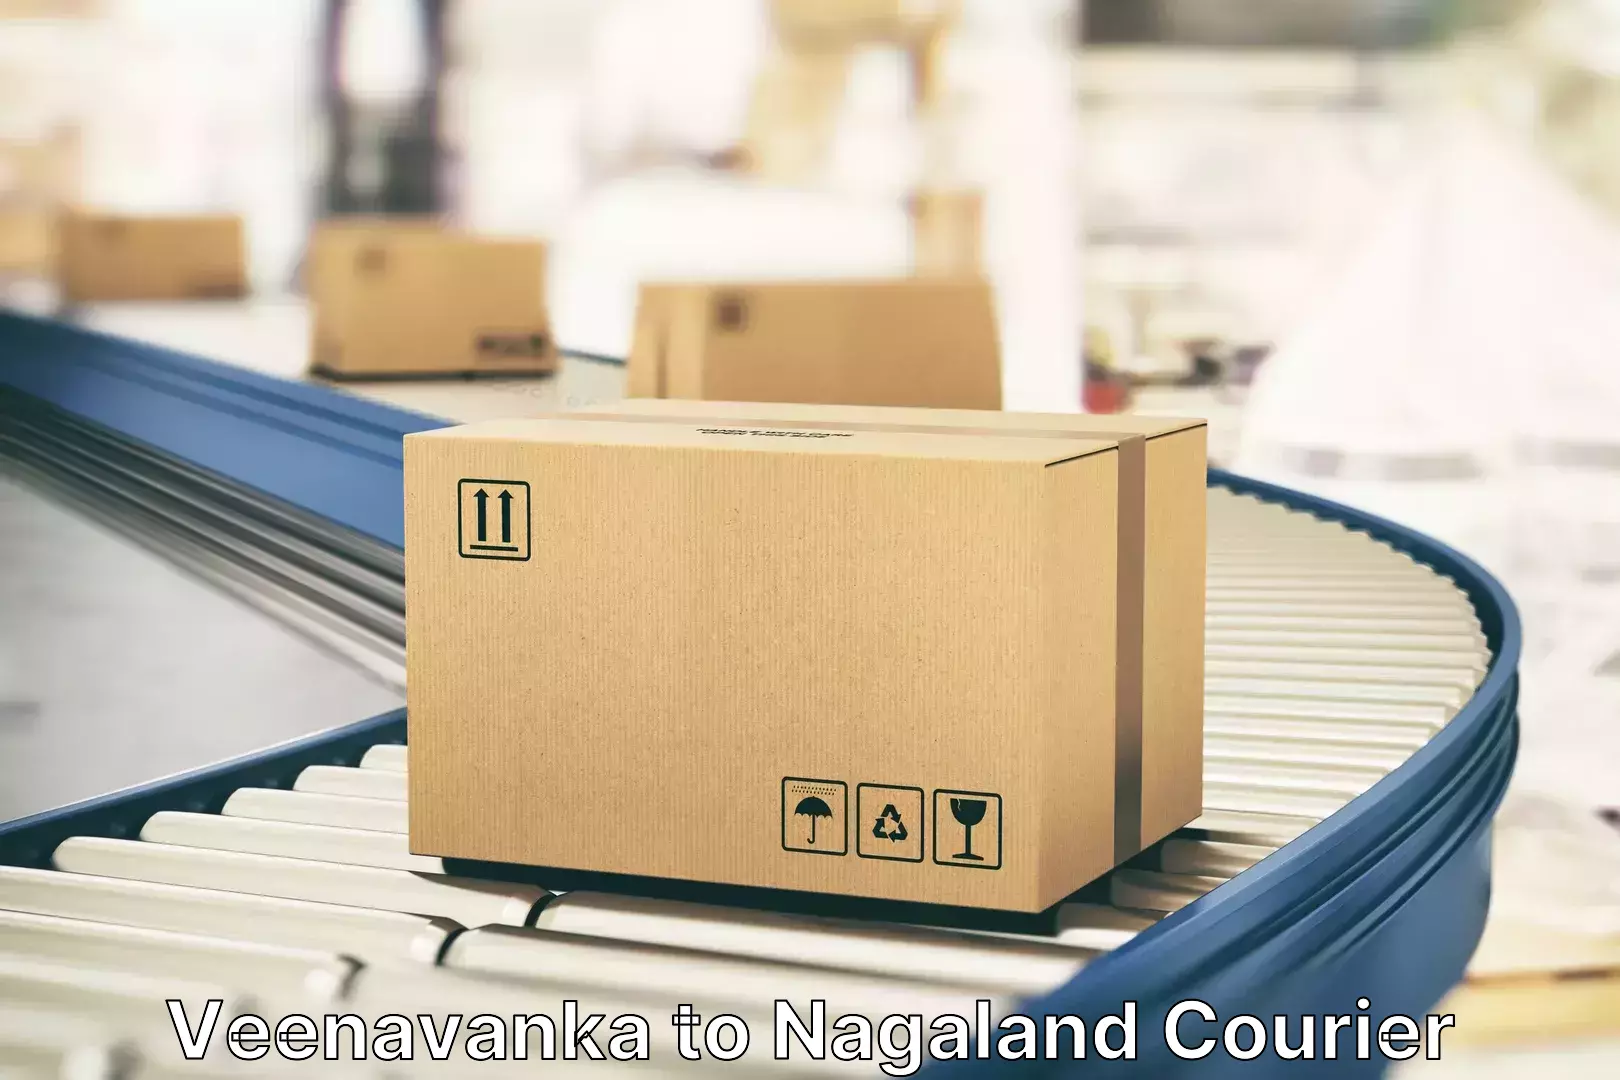 Door-to-door baggage service Veenavanka to Nagaland